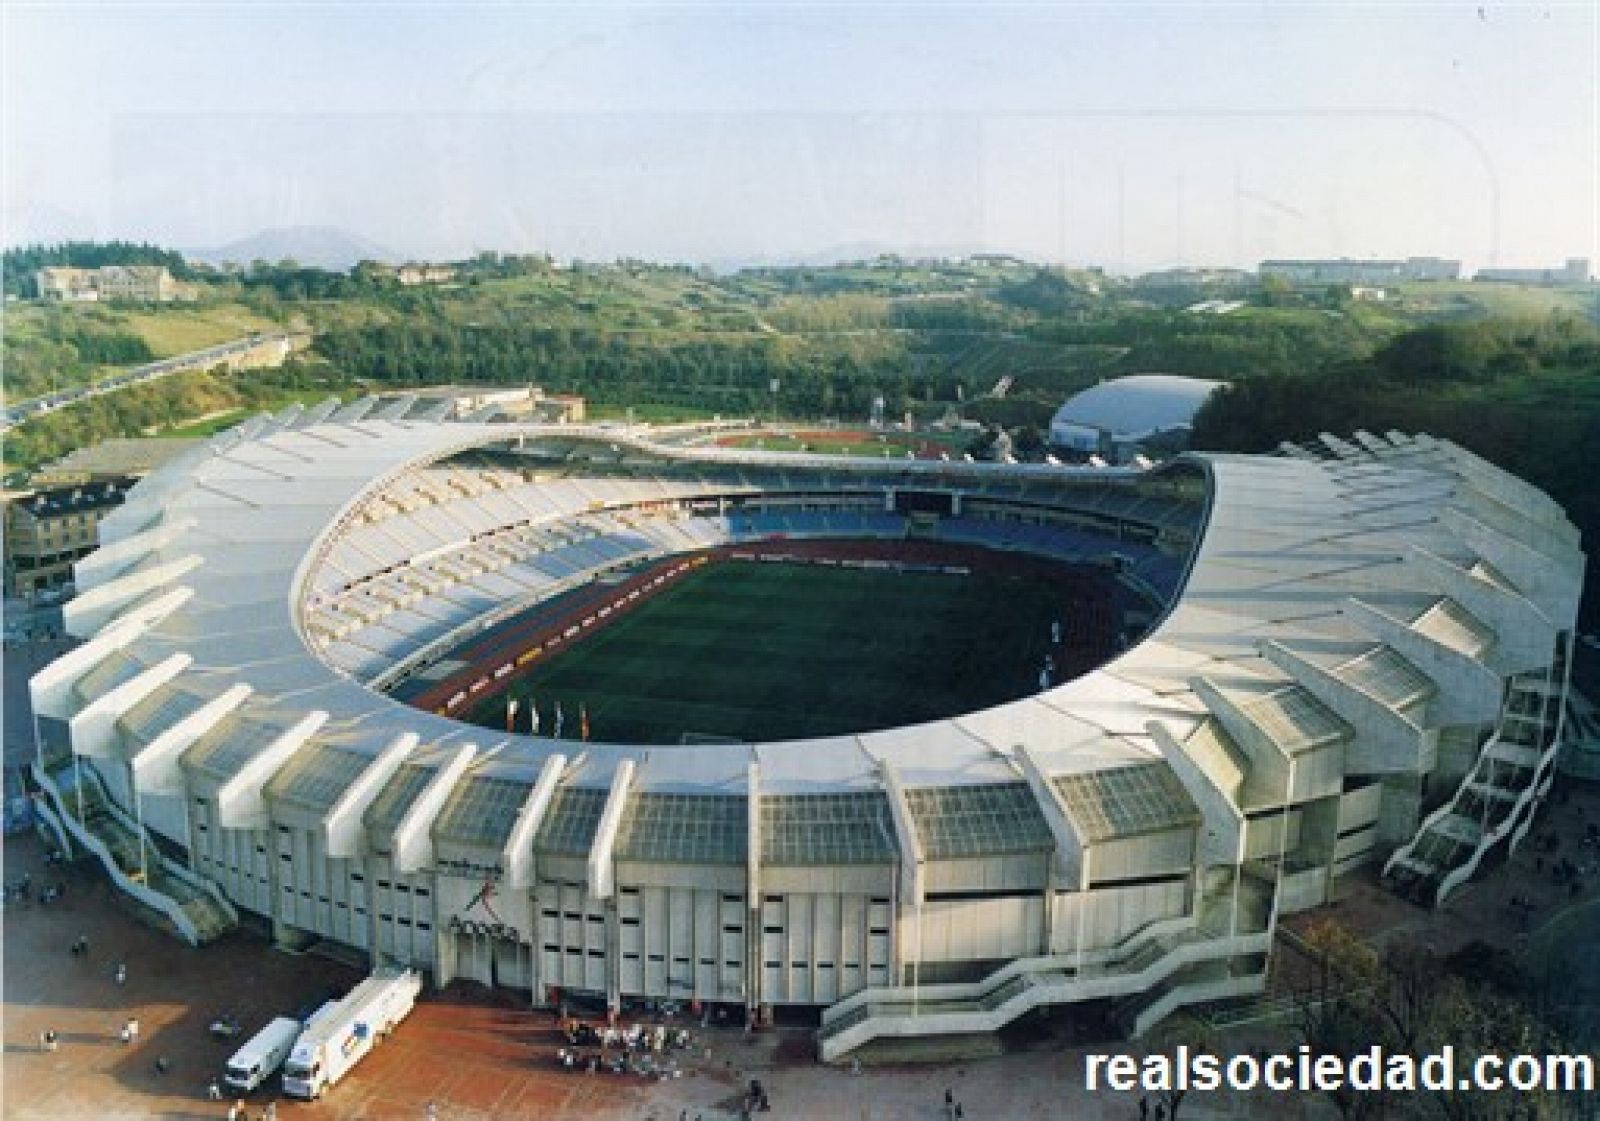 Vista aérea del estadio de Anoeta, sede de la Real Sociedad